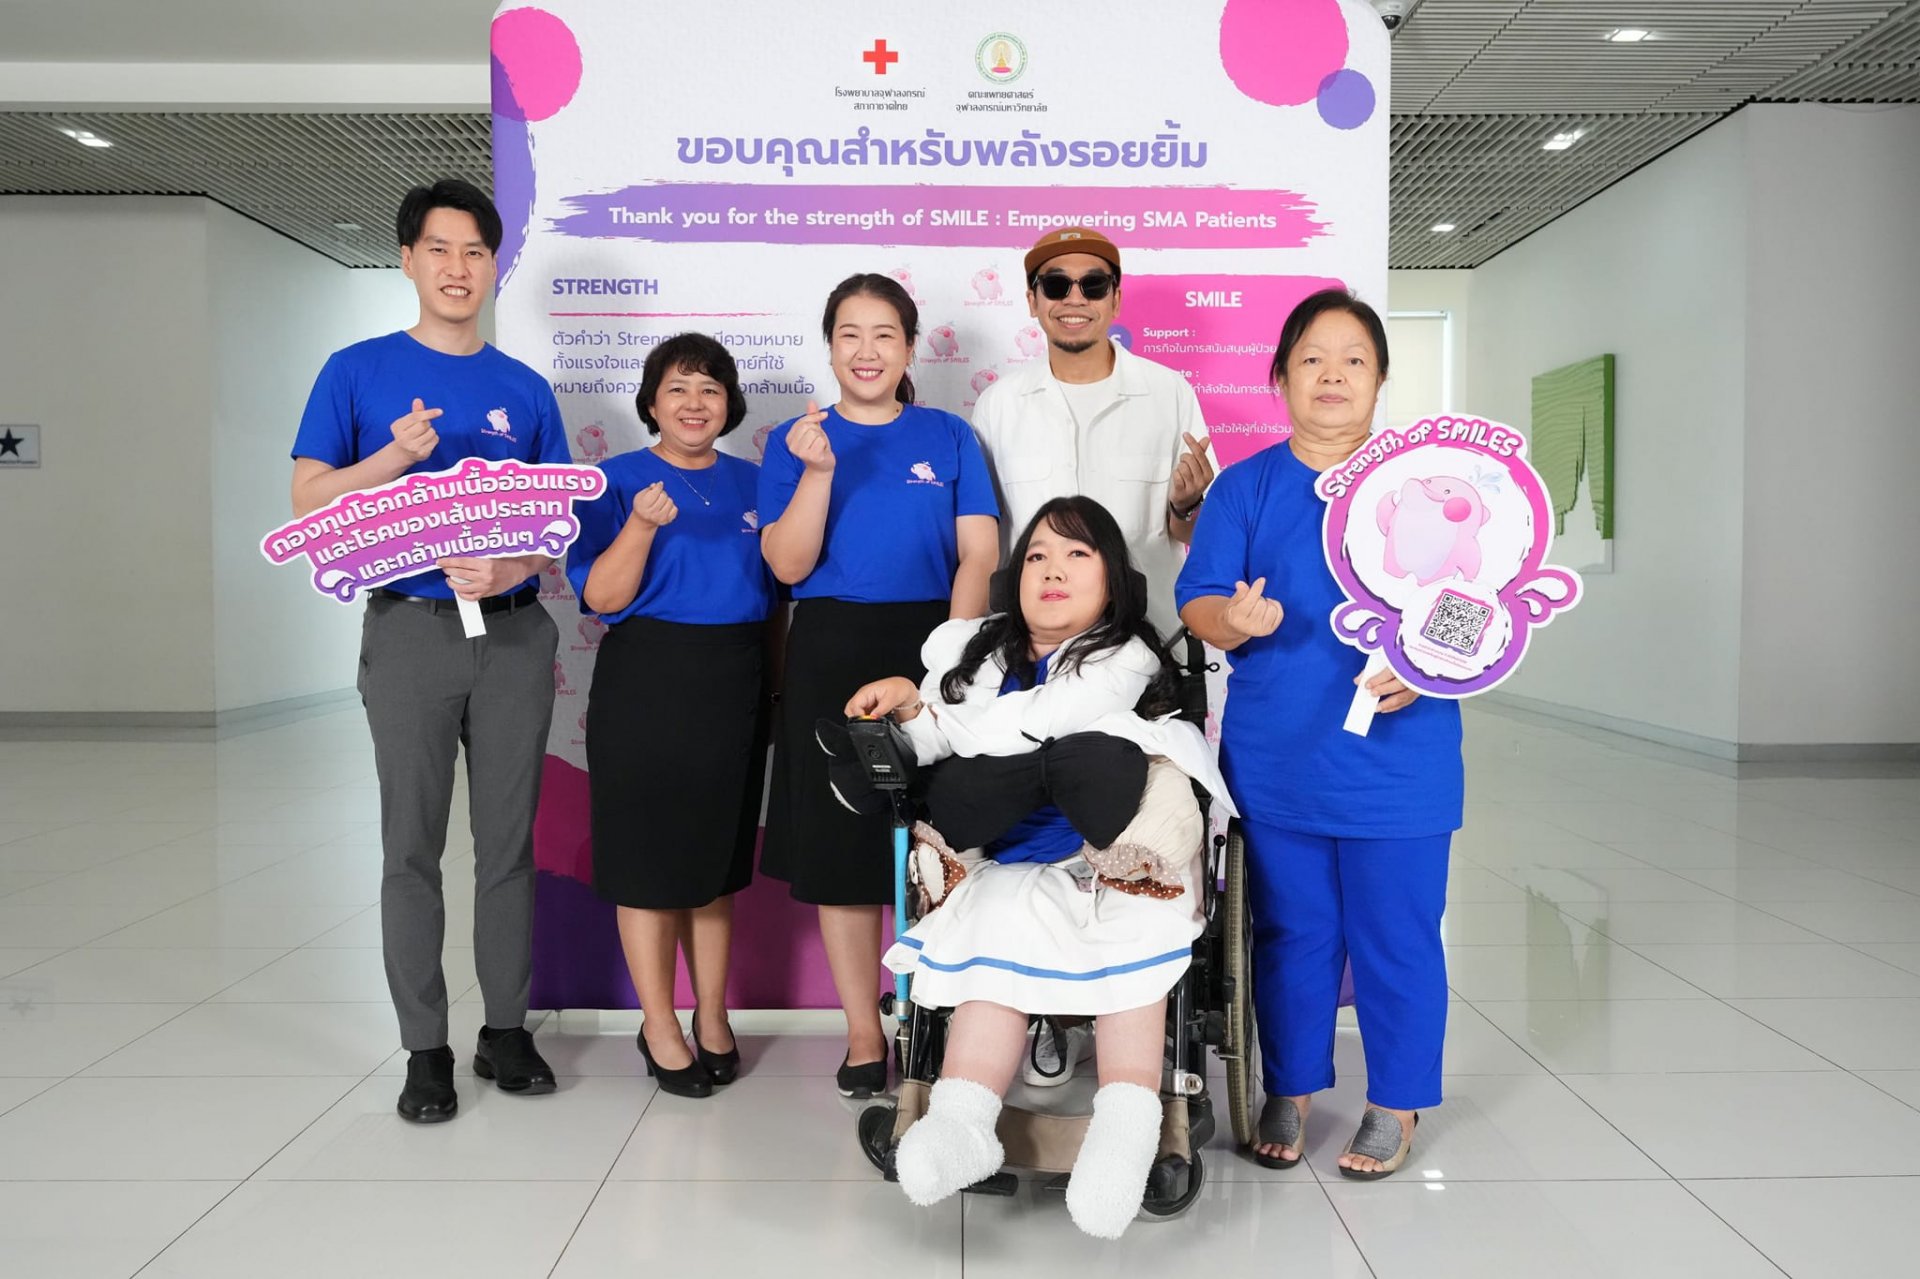 โรงพยาบาลจุฬาลงกรณ์ สภากาชาดไทย พร้อมแพทย์ คนไข้ และศิลปิน ร่วมเปิด "กองทุนโรคกล้ามเนื้ออ่อนแรง"